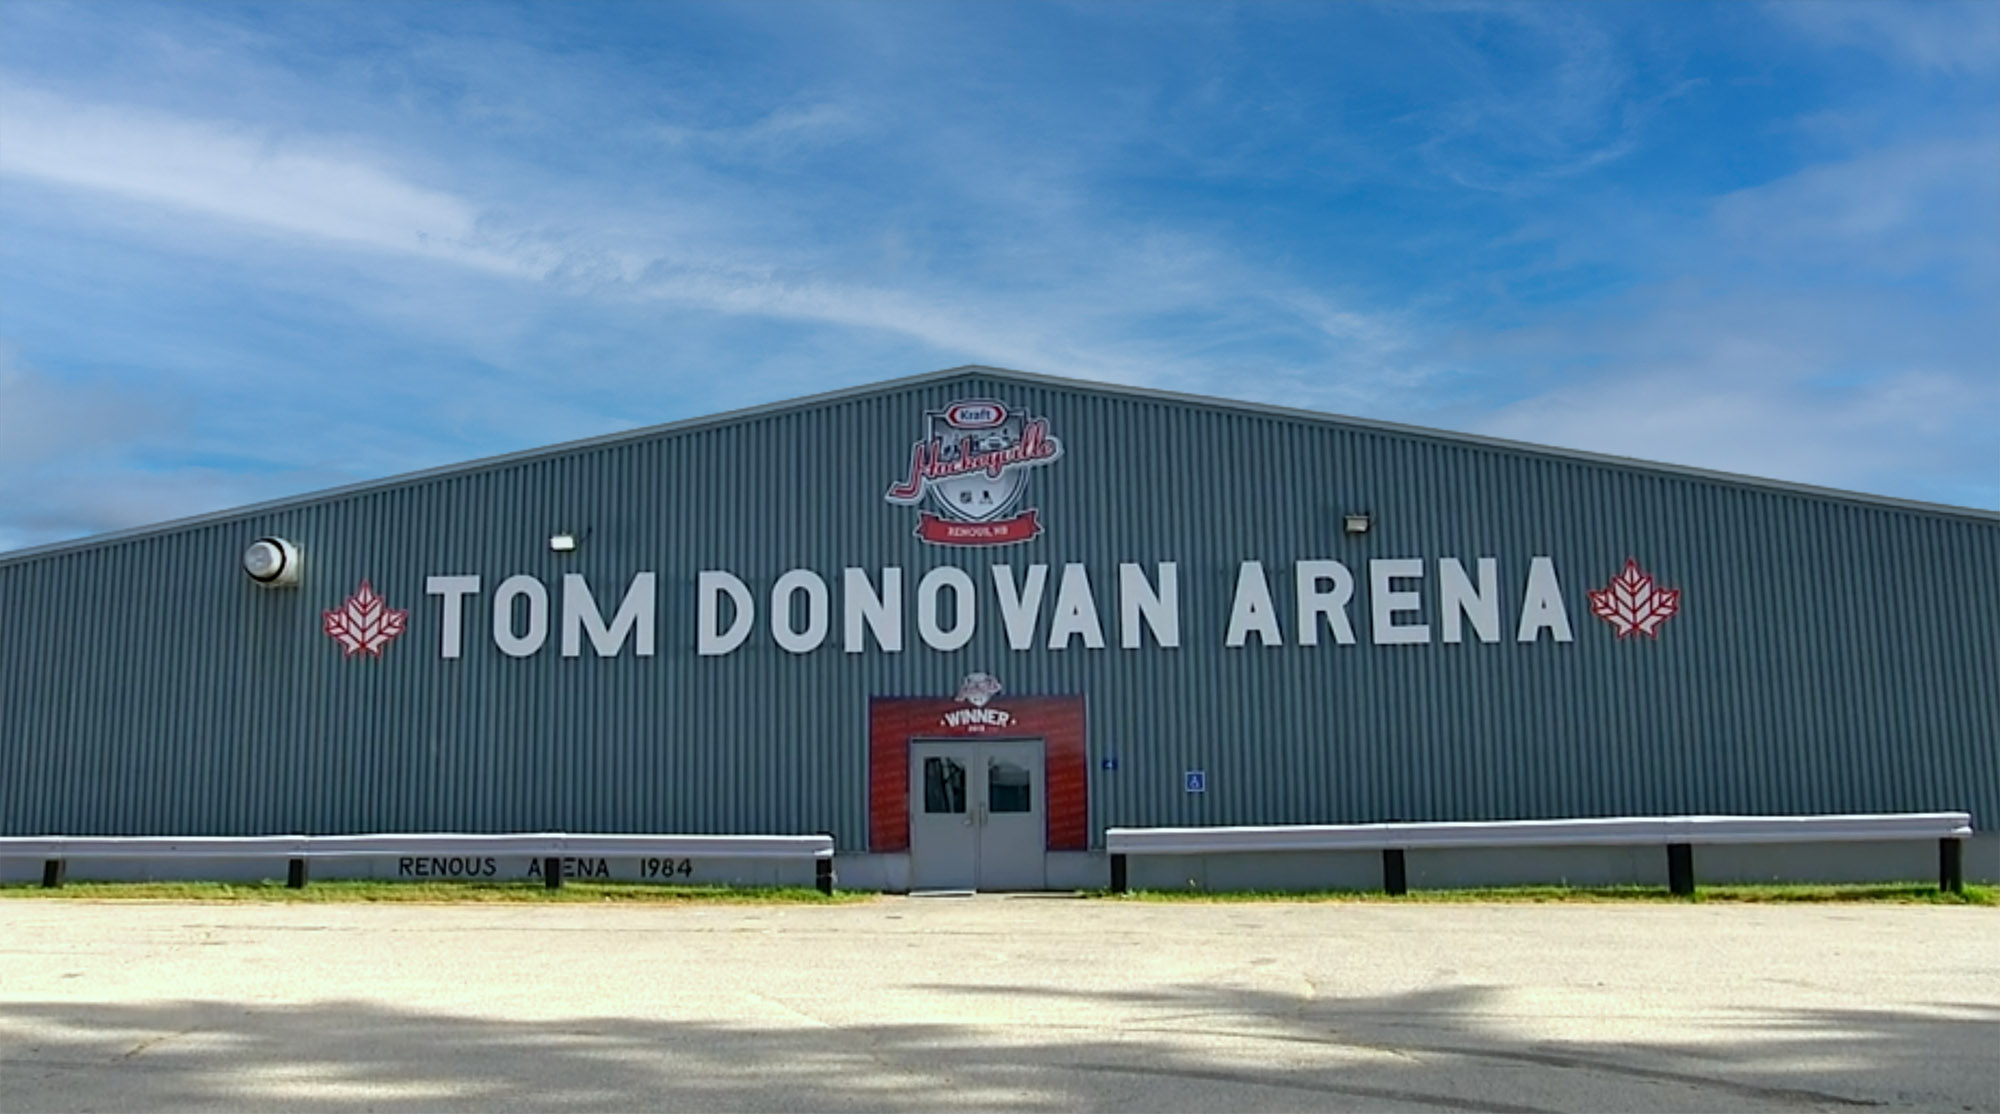 Tom Donovan Arena